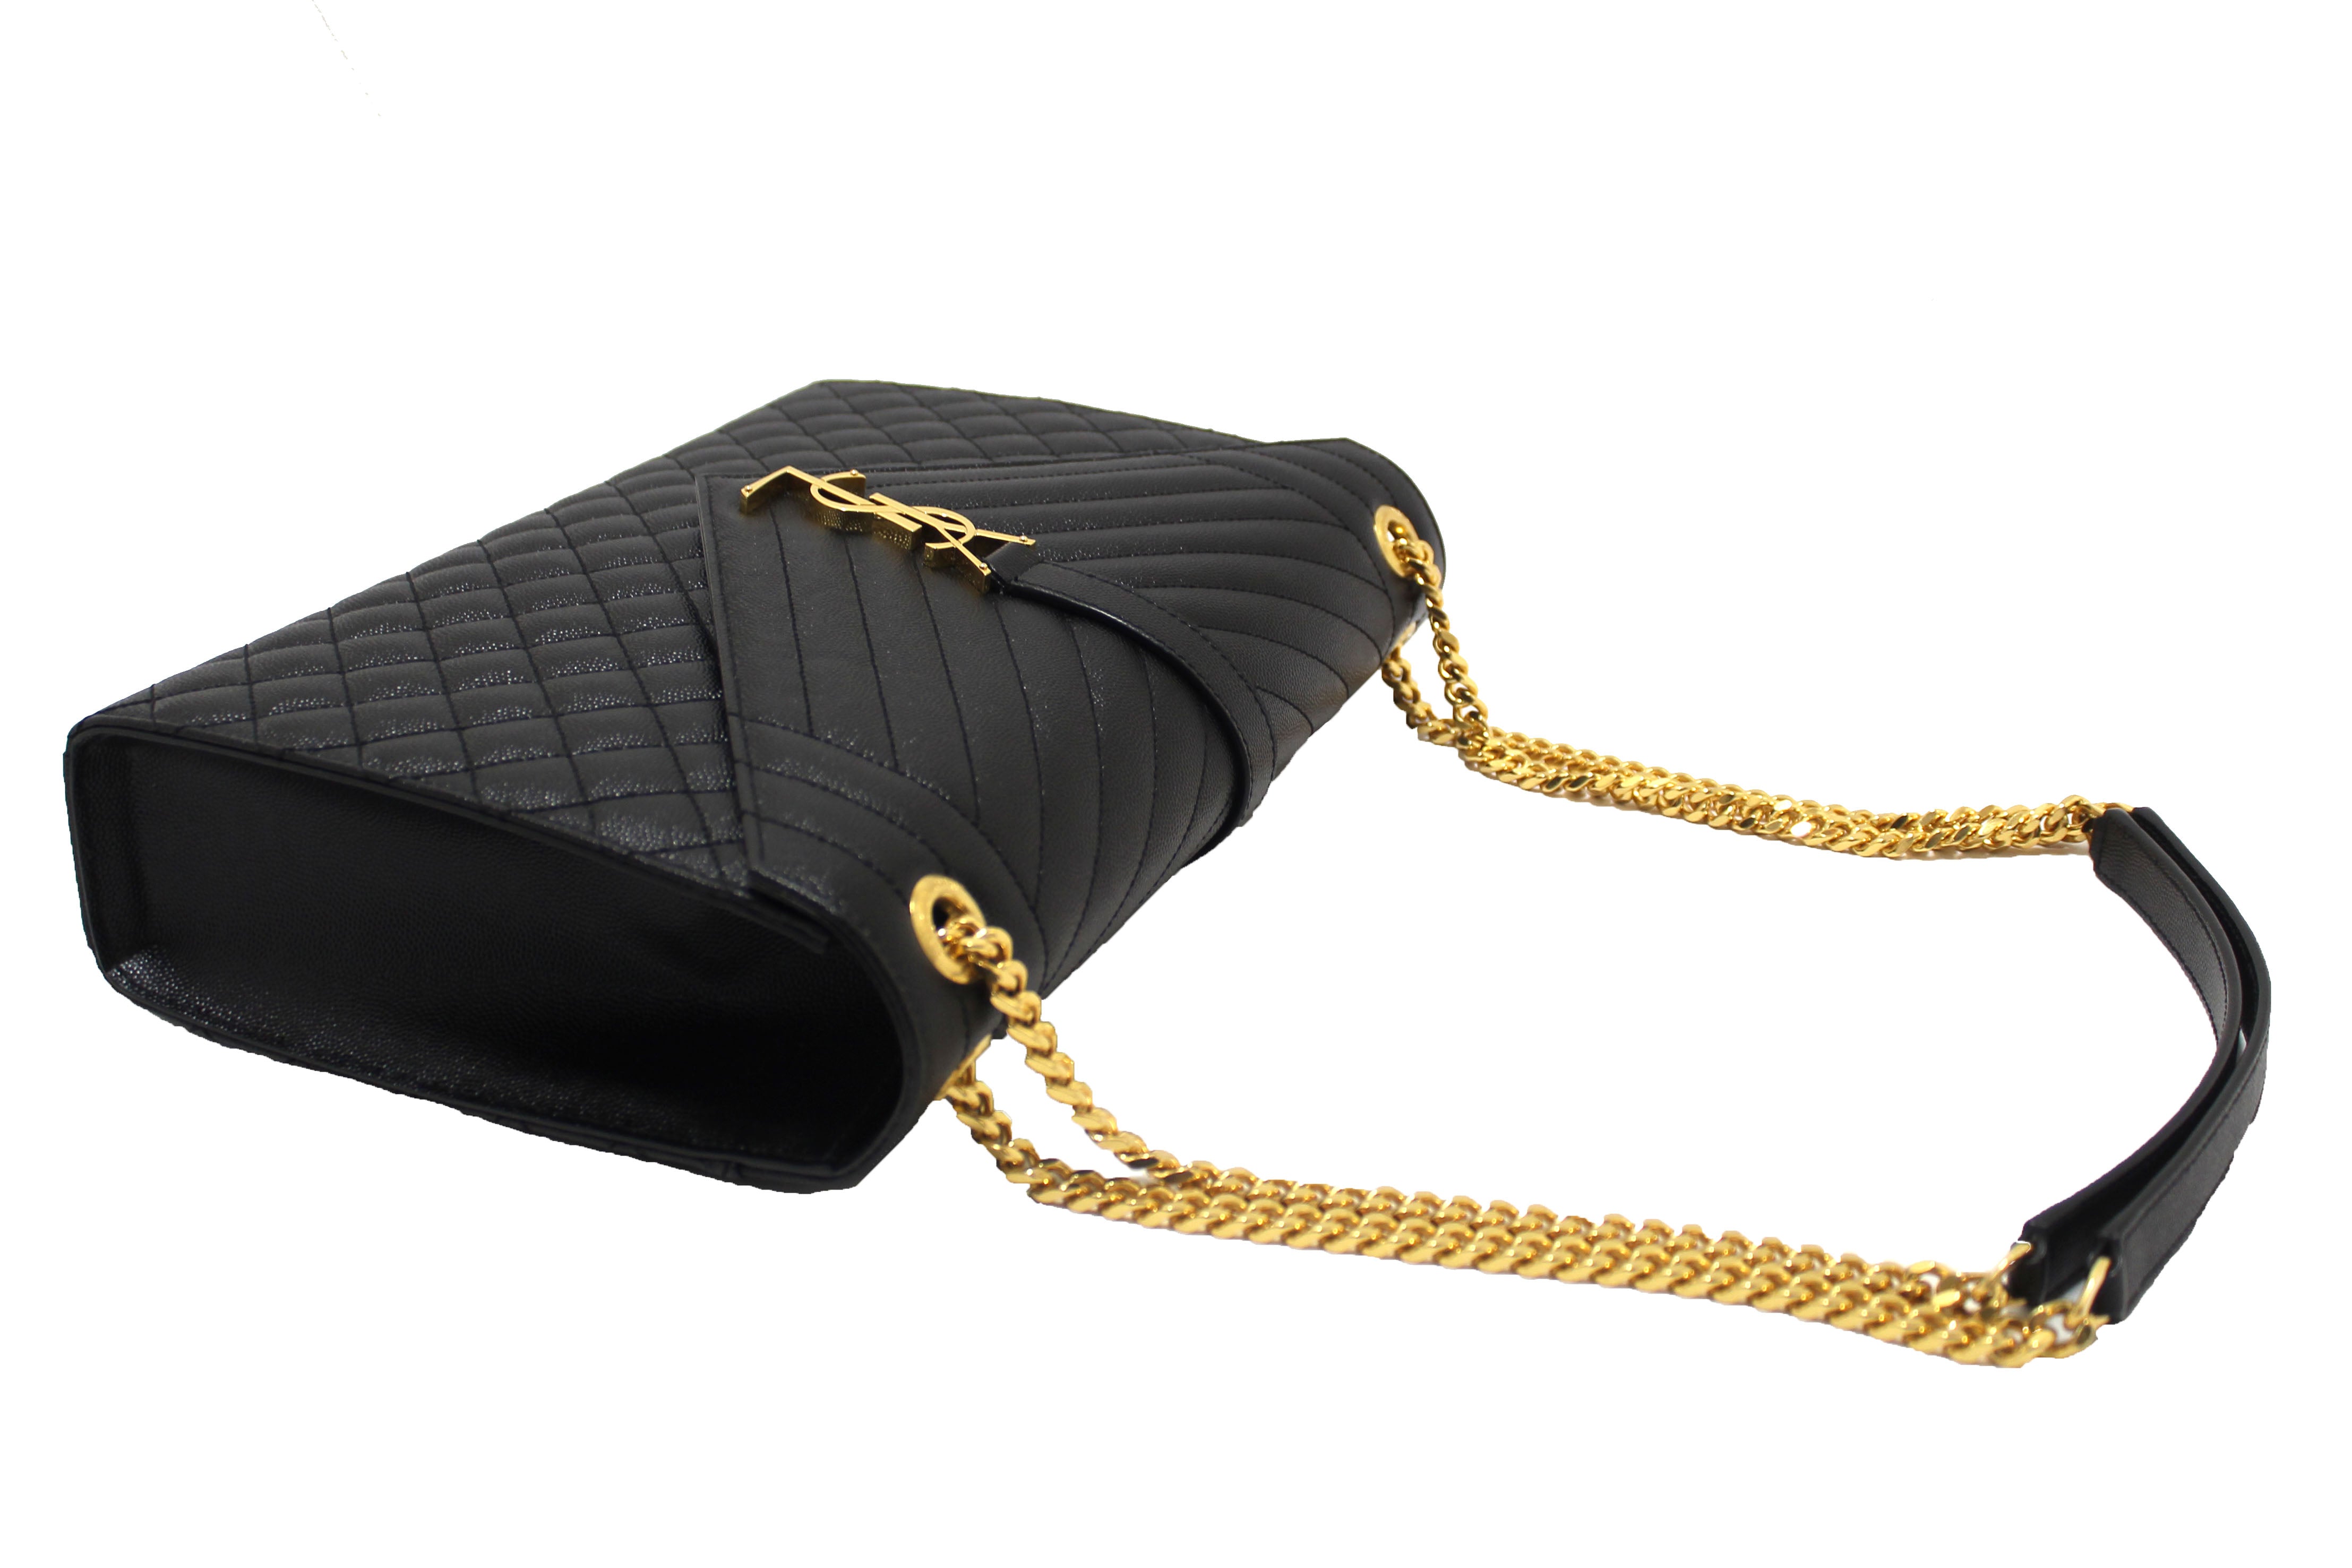 Authentic Saint Laurent Black Matelasse Grain De Poudre Embossed Leather Large Envelope Bag